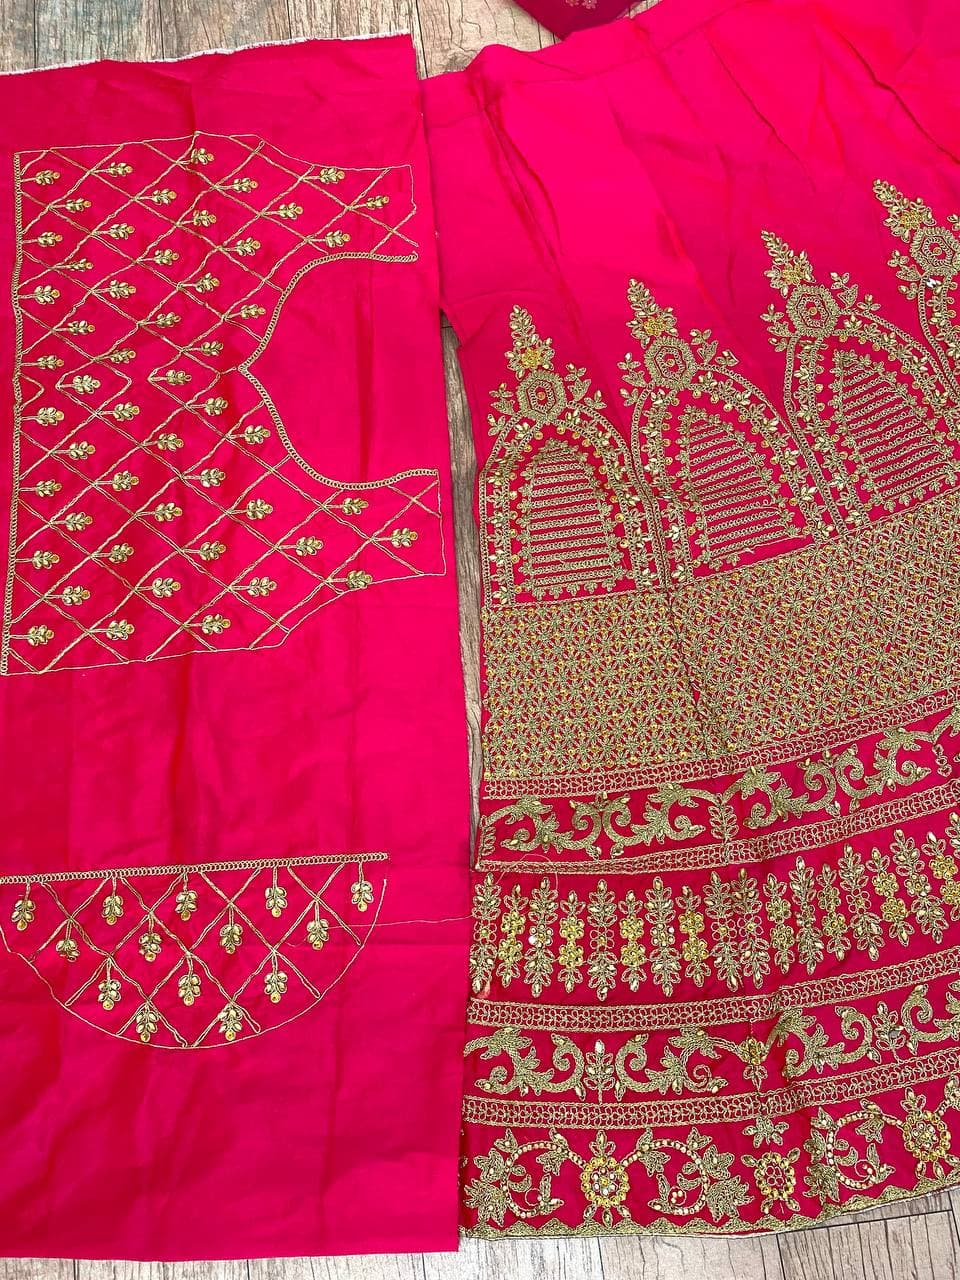 Rani Pink Lehenga Choli In Malai Satin Silk With Cording Work